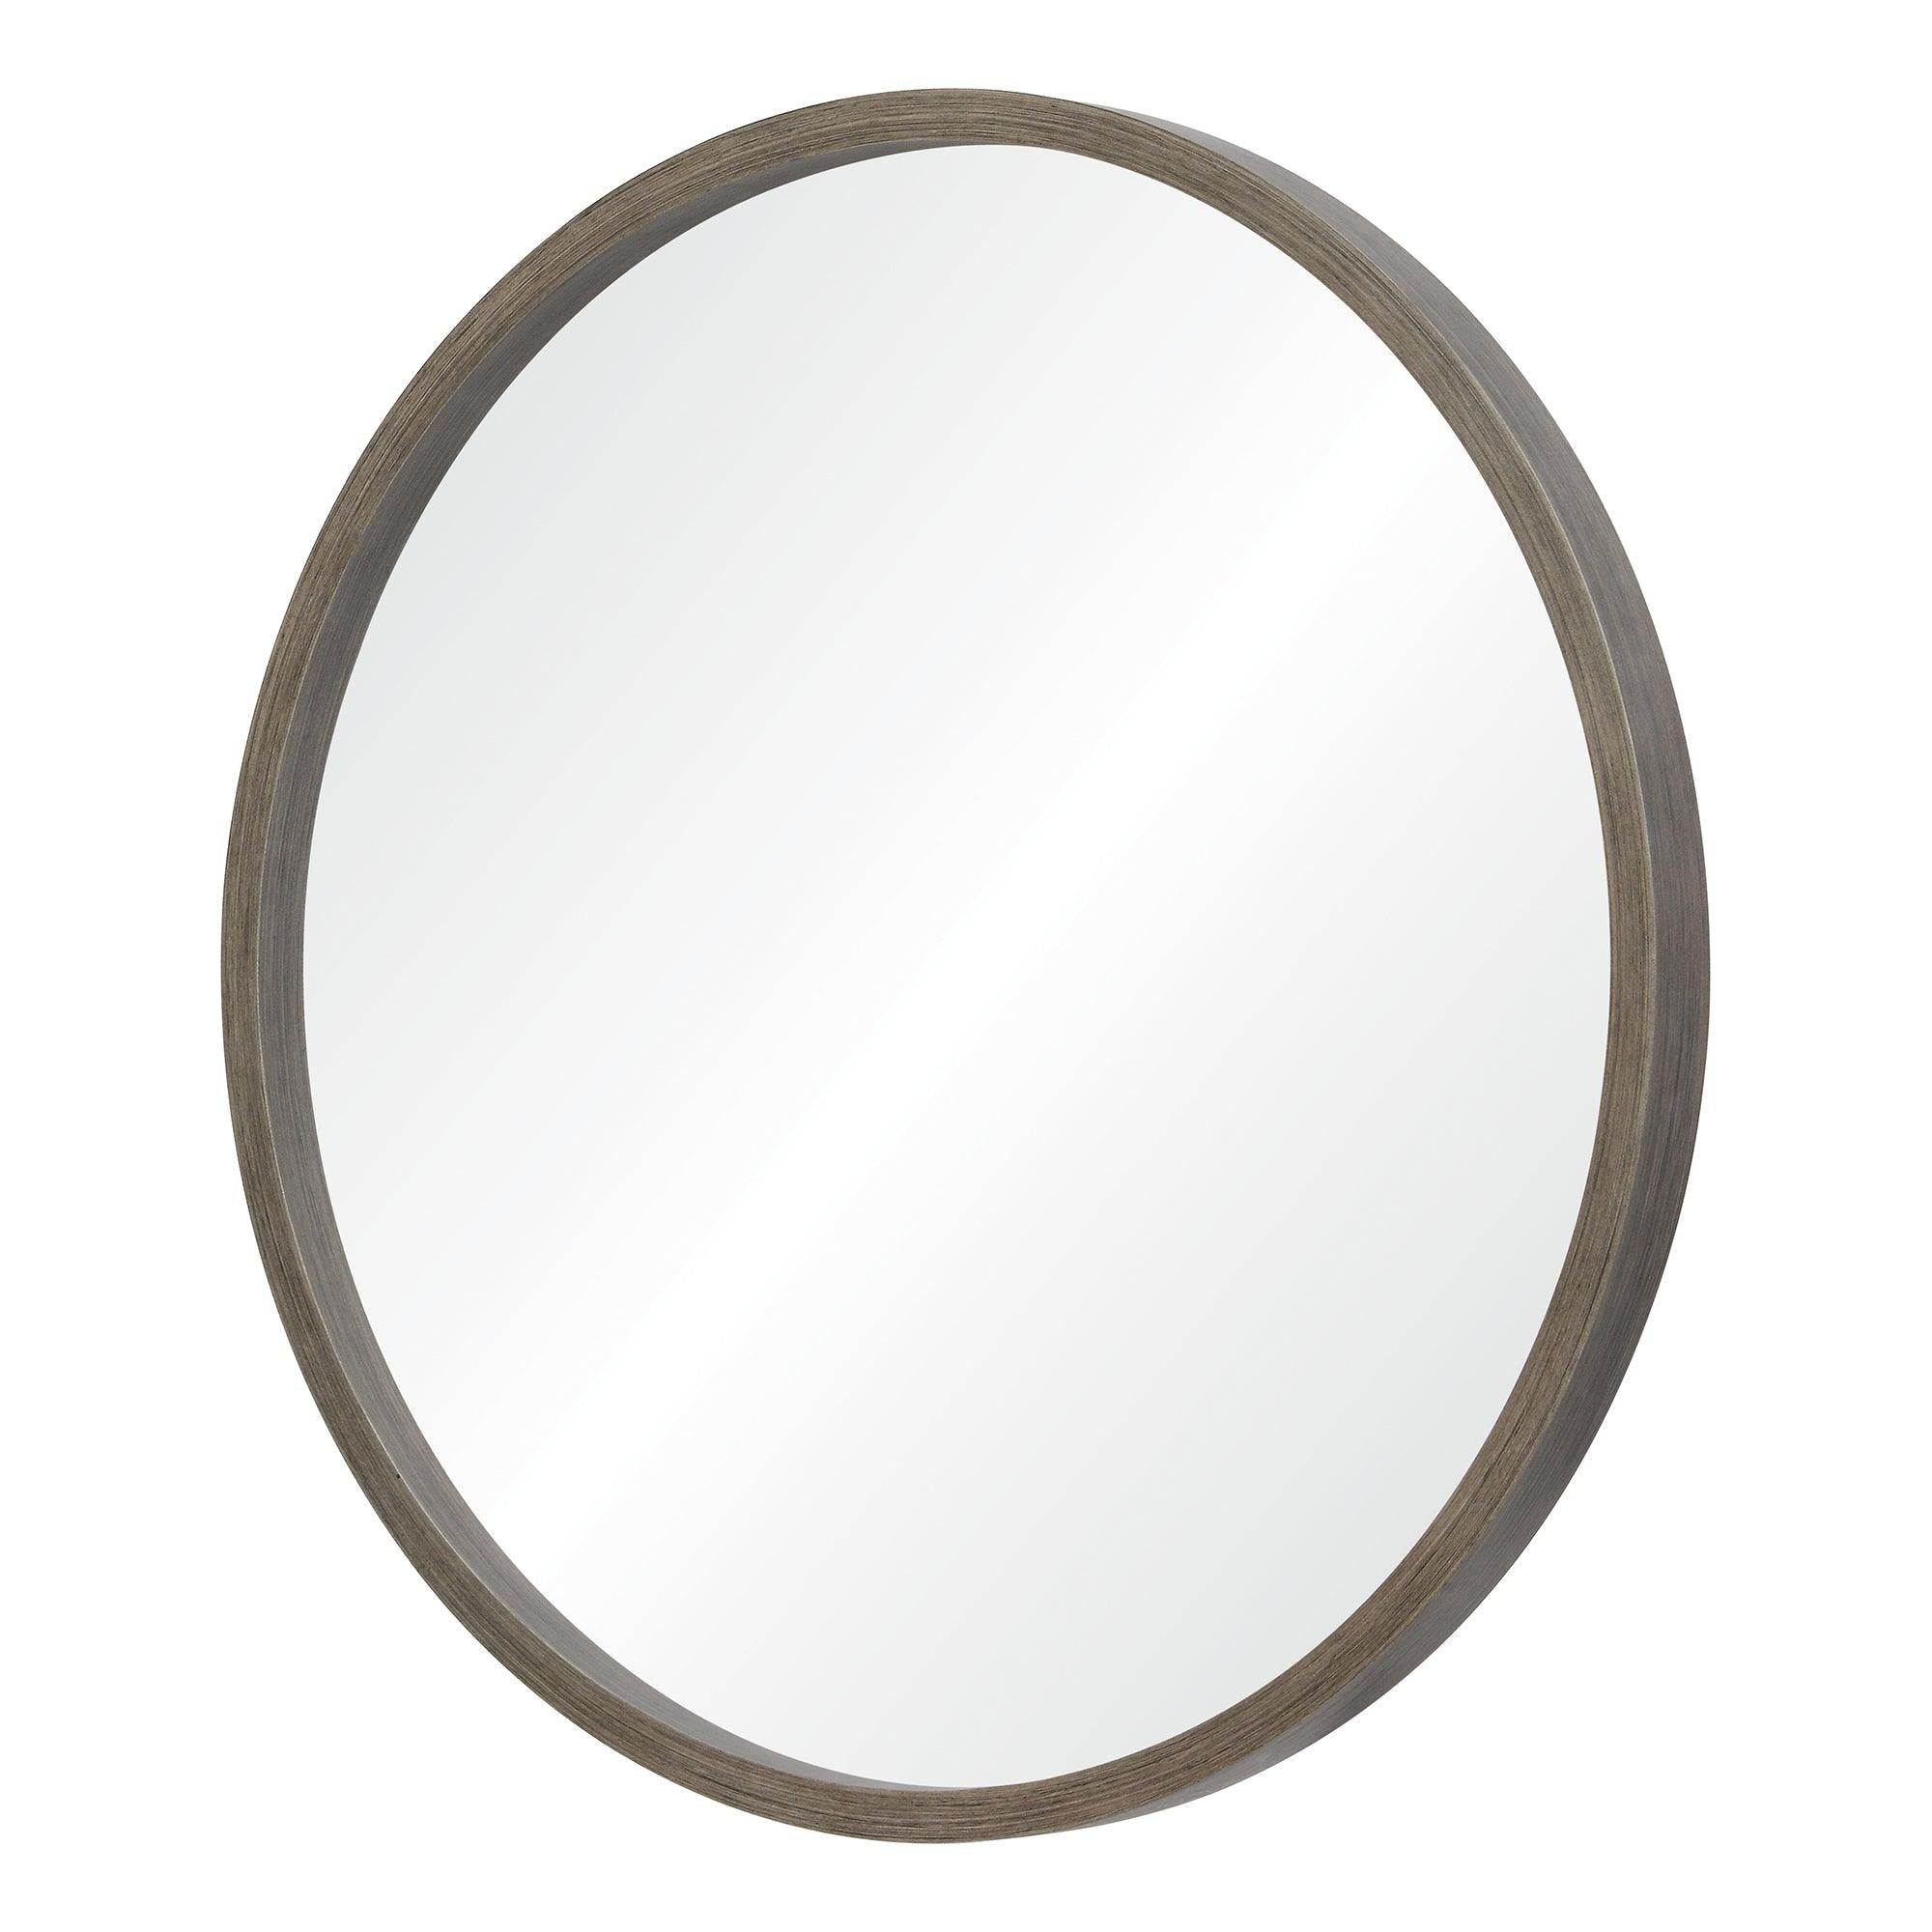 Birman Mirror - Reimagine Designs - Mirrors